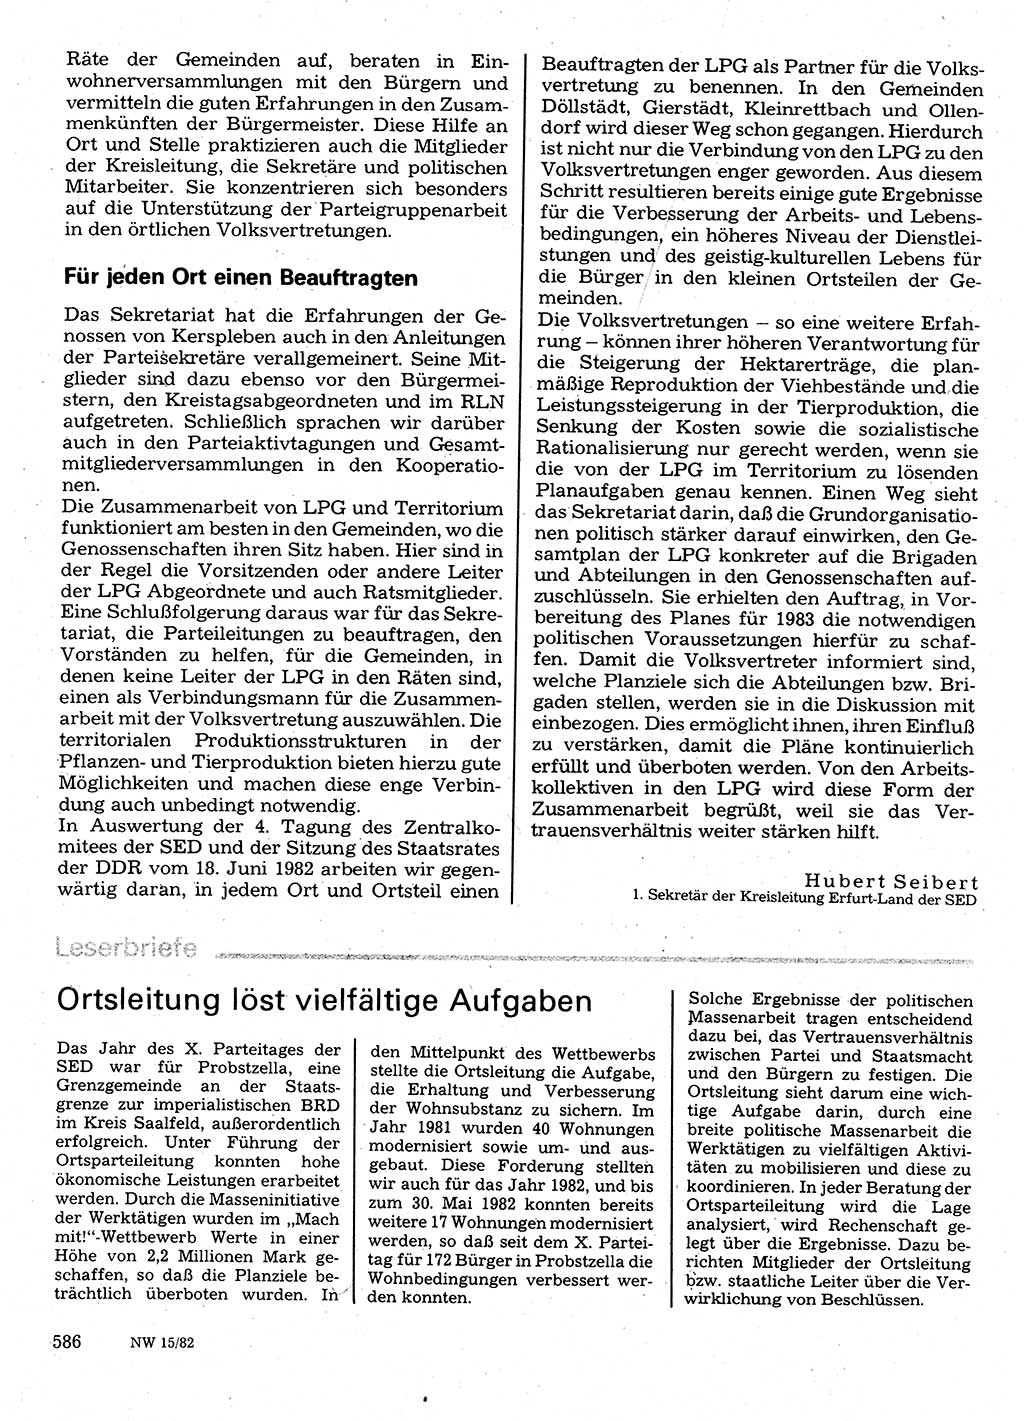 Neuer Weg (NW), Organ des Zentralkomitees (ZK) der SED (Sozialistische Einheitspartei Deutschlands) für Fragen des Parteilebens, 37. Jahrgang [Deutsche Demokratische Republik (DDR)] 1982, Seite 586 (NW ZK SED DDR 1982, S. 586)